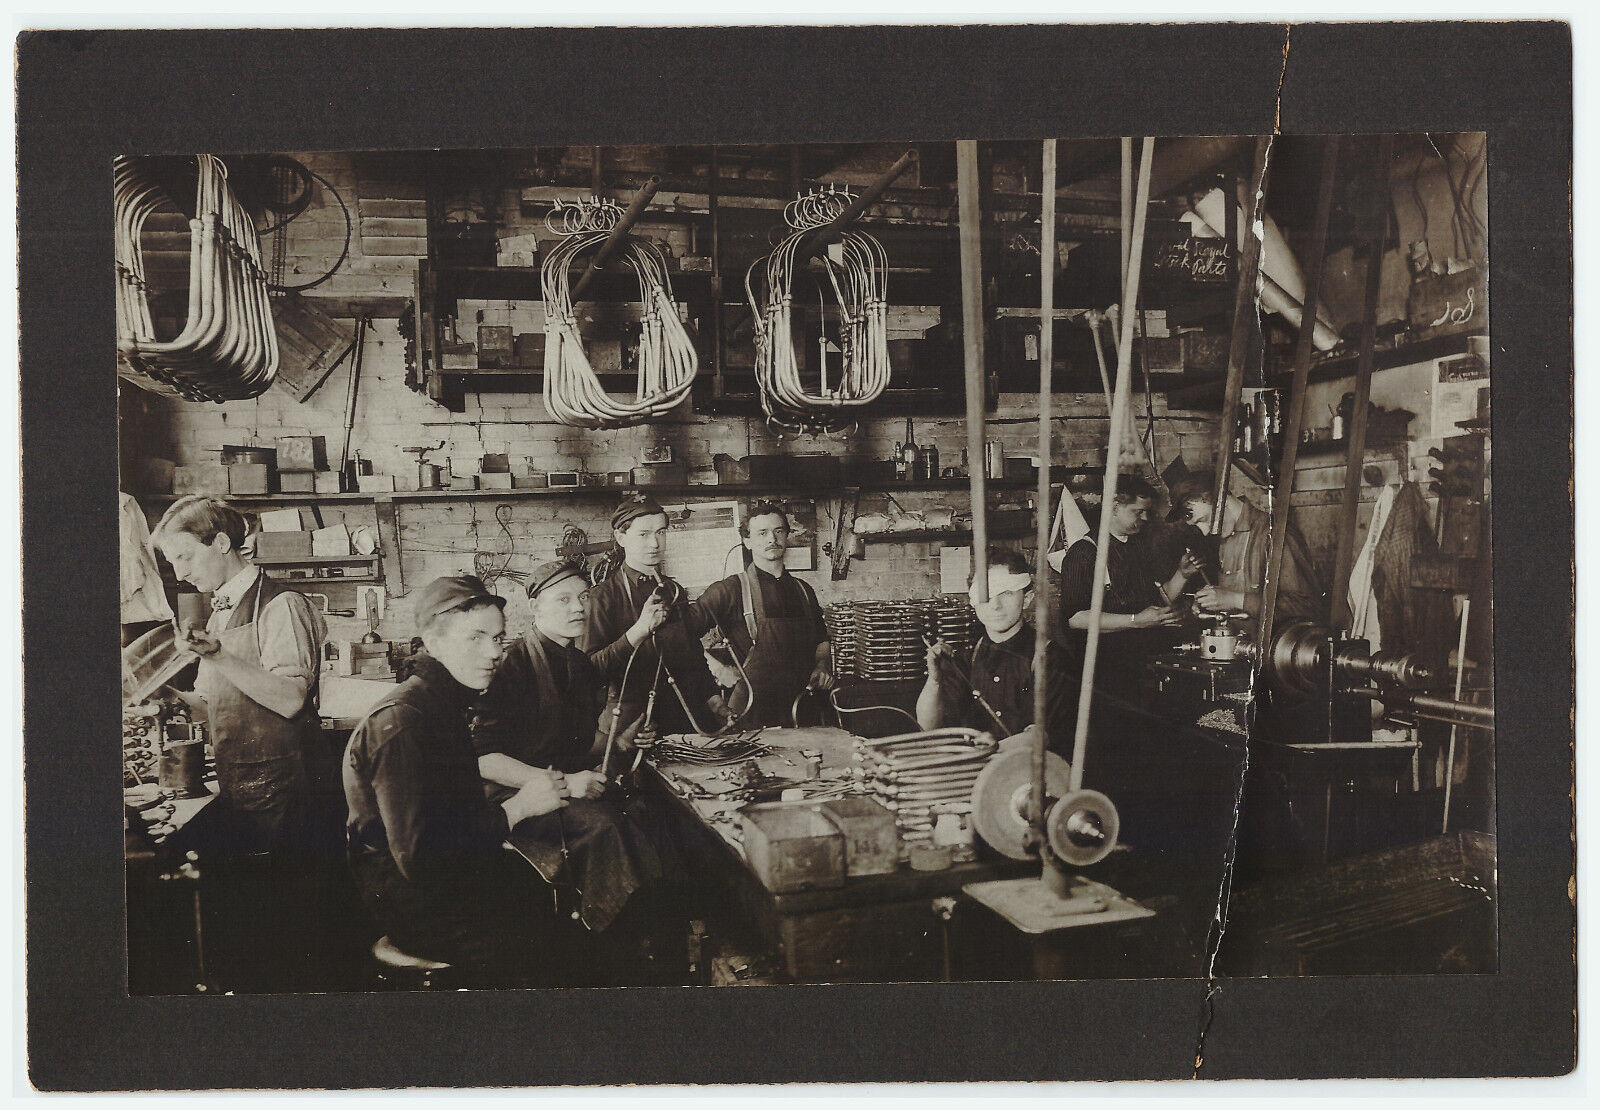 RARE 1904 Workshop Factory Photo - Royal Automobile? Auto Car - Tourist?